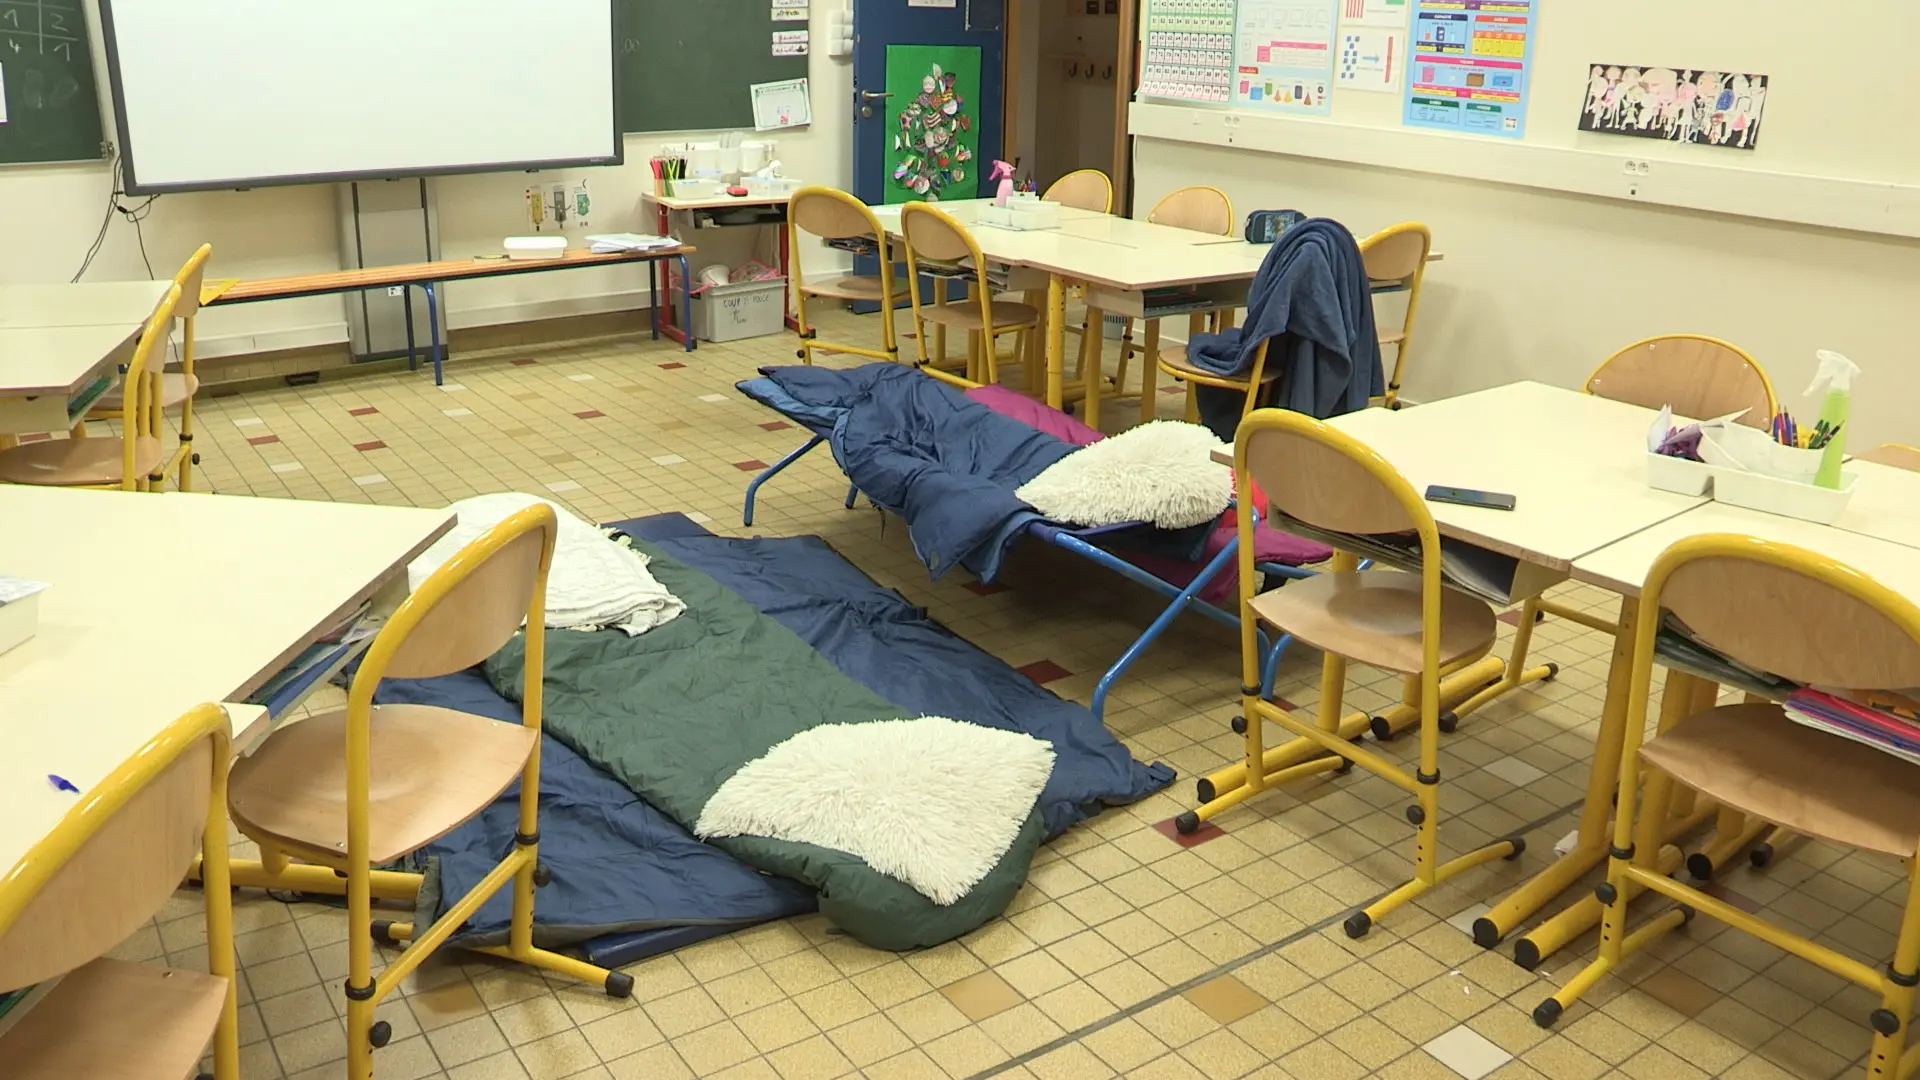 Vidéo : à Vaulx-en-Velin, l’école comme dernier refuge avant la rue